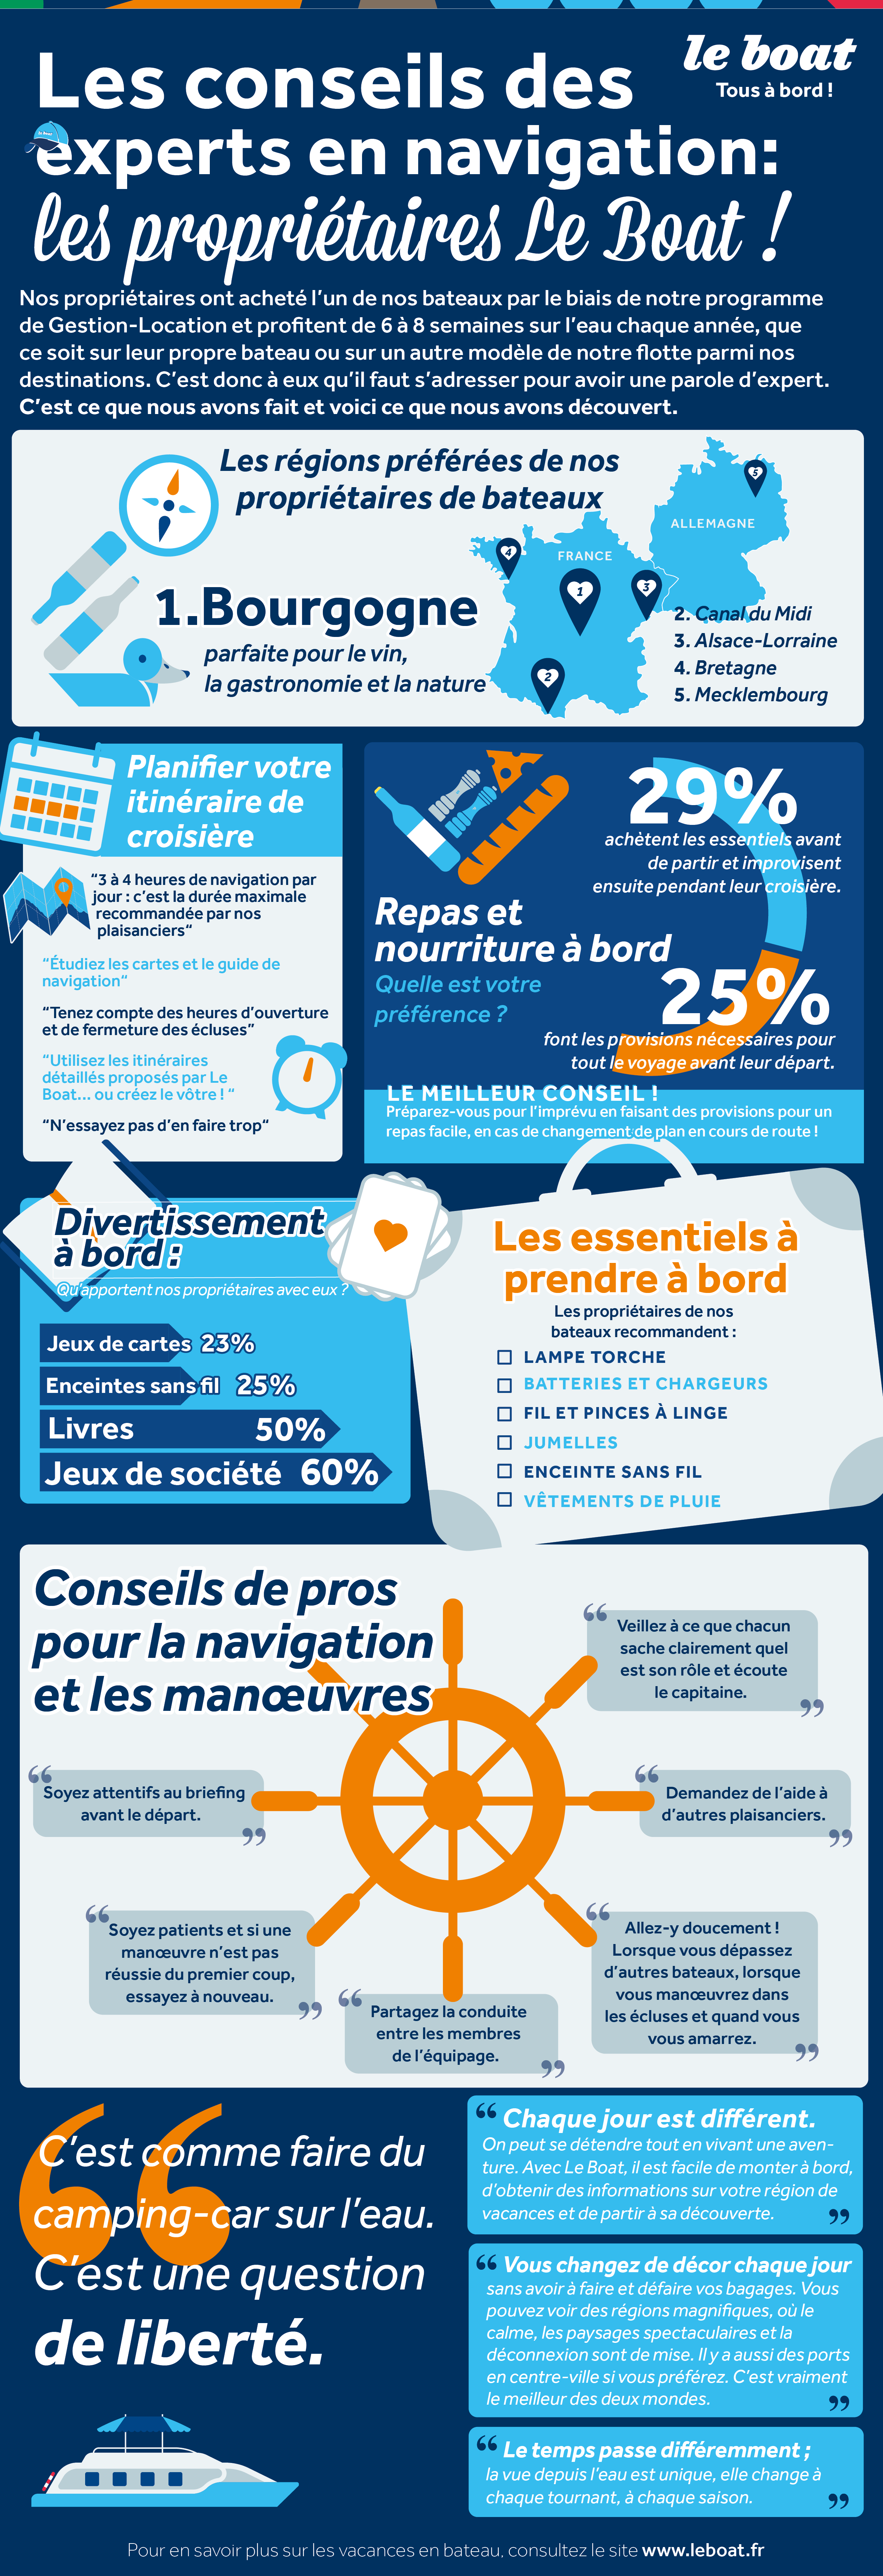 Infographie Le Boat - Sondage proprietaires de bateaux